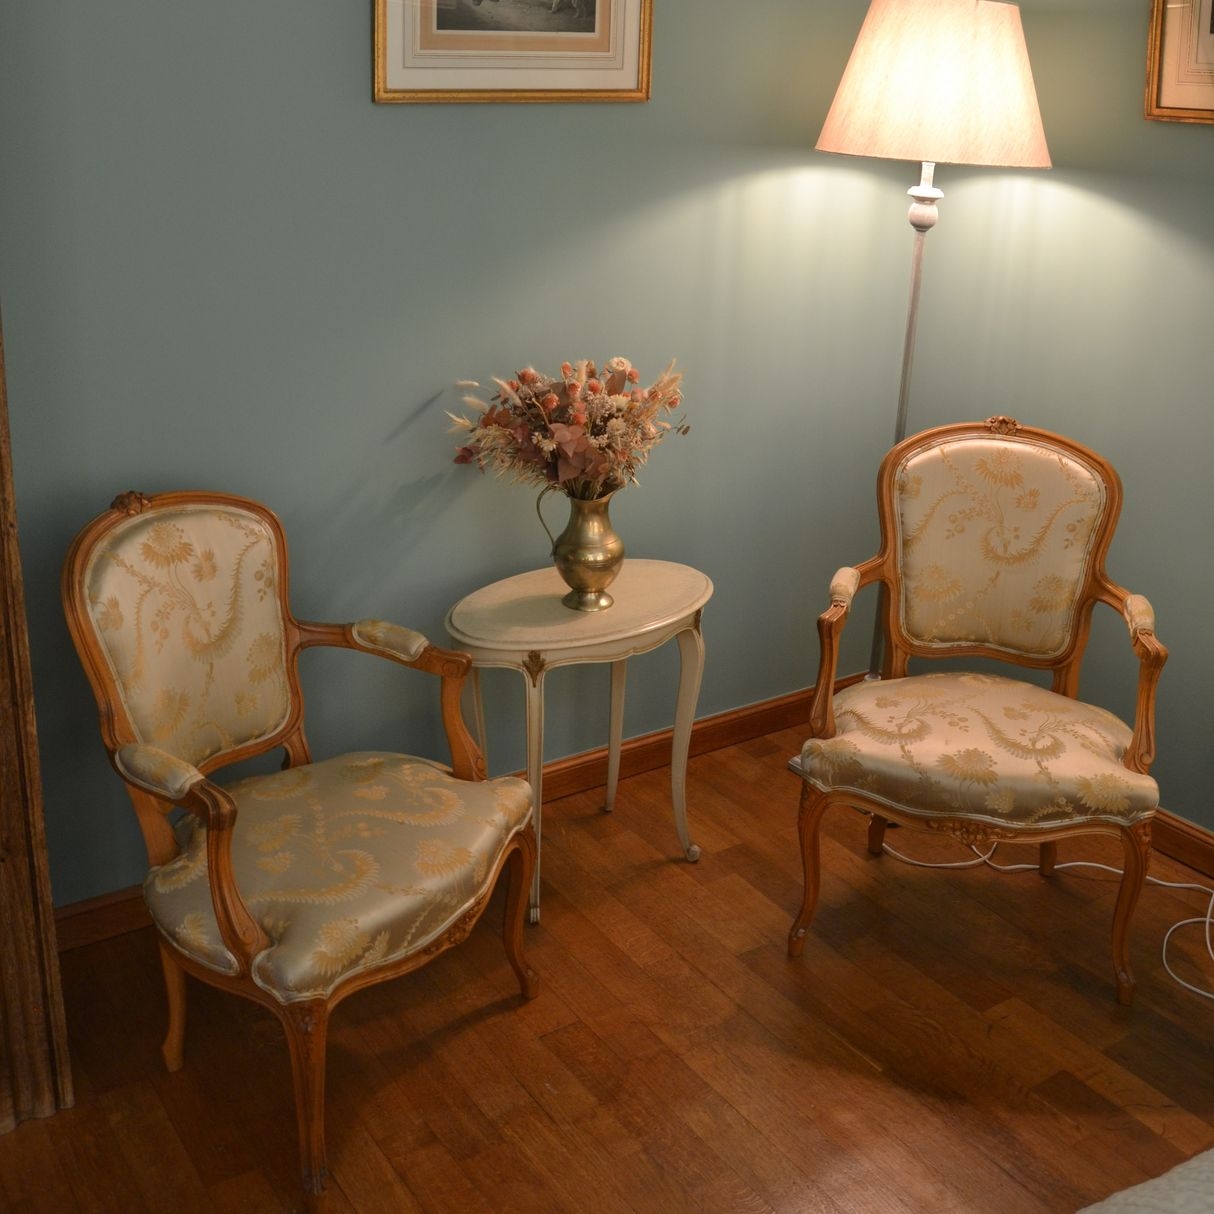 Magnifique petit salon dans la chambre magnolia du chateau de la sauliniere